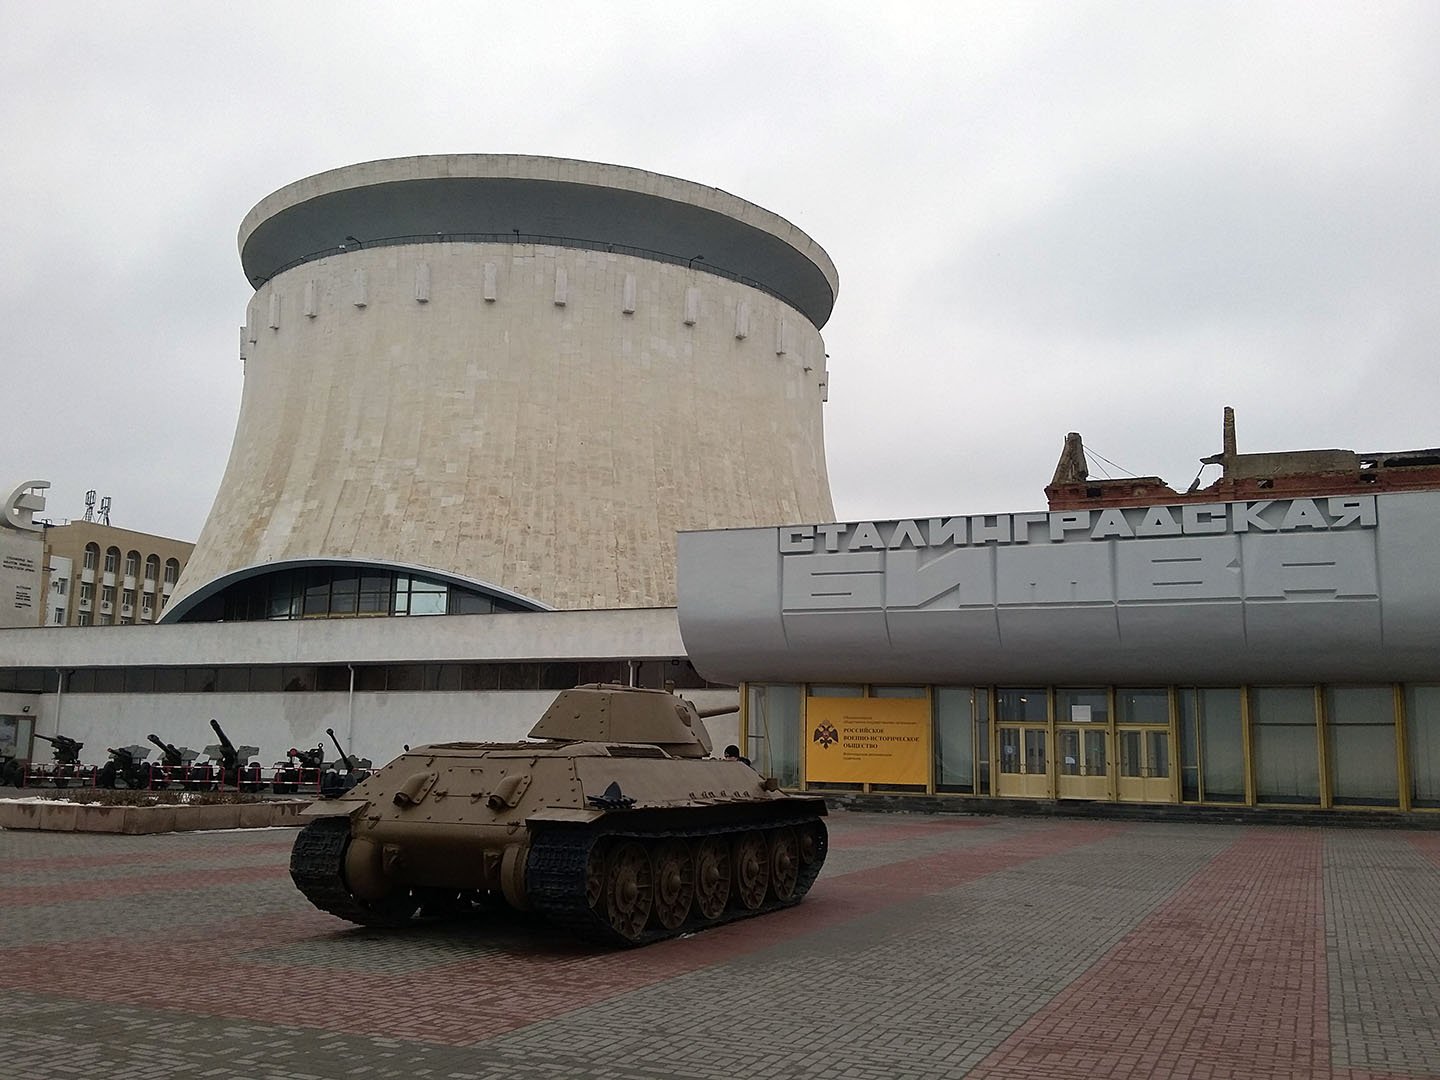 фото музей панорама сталинградская битва